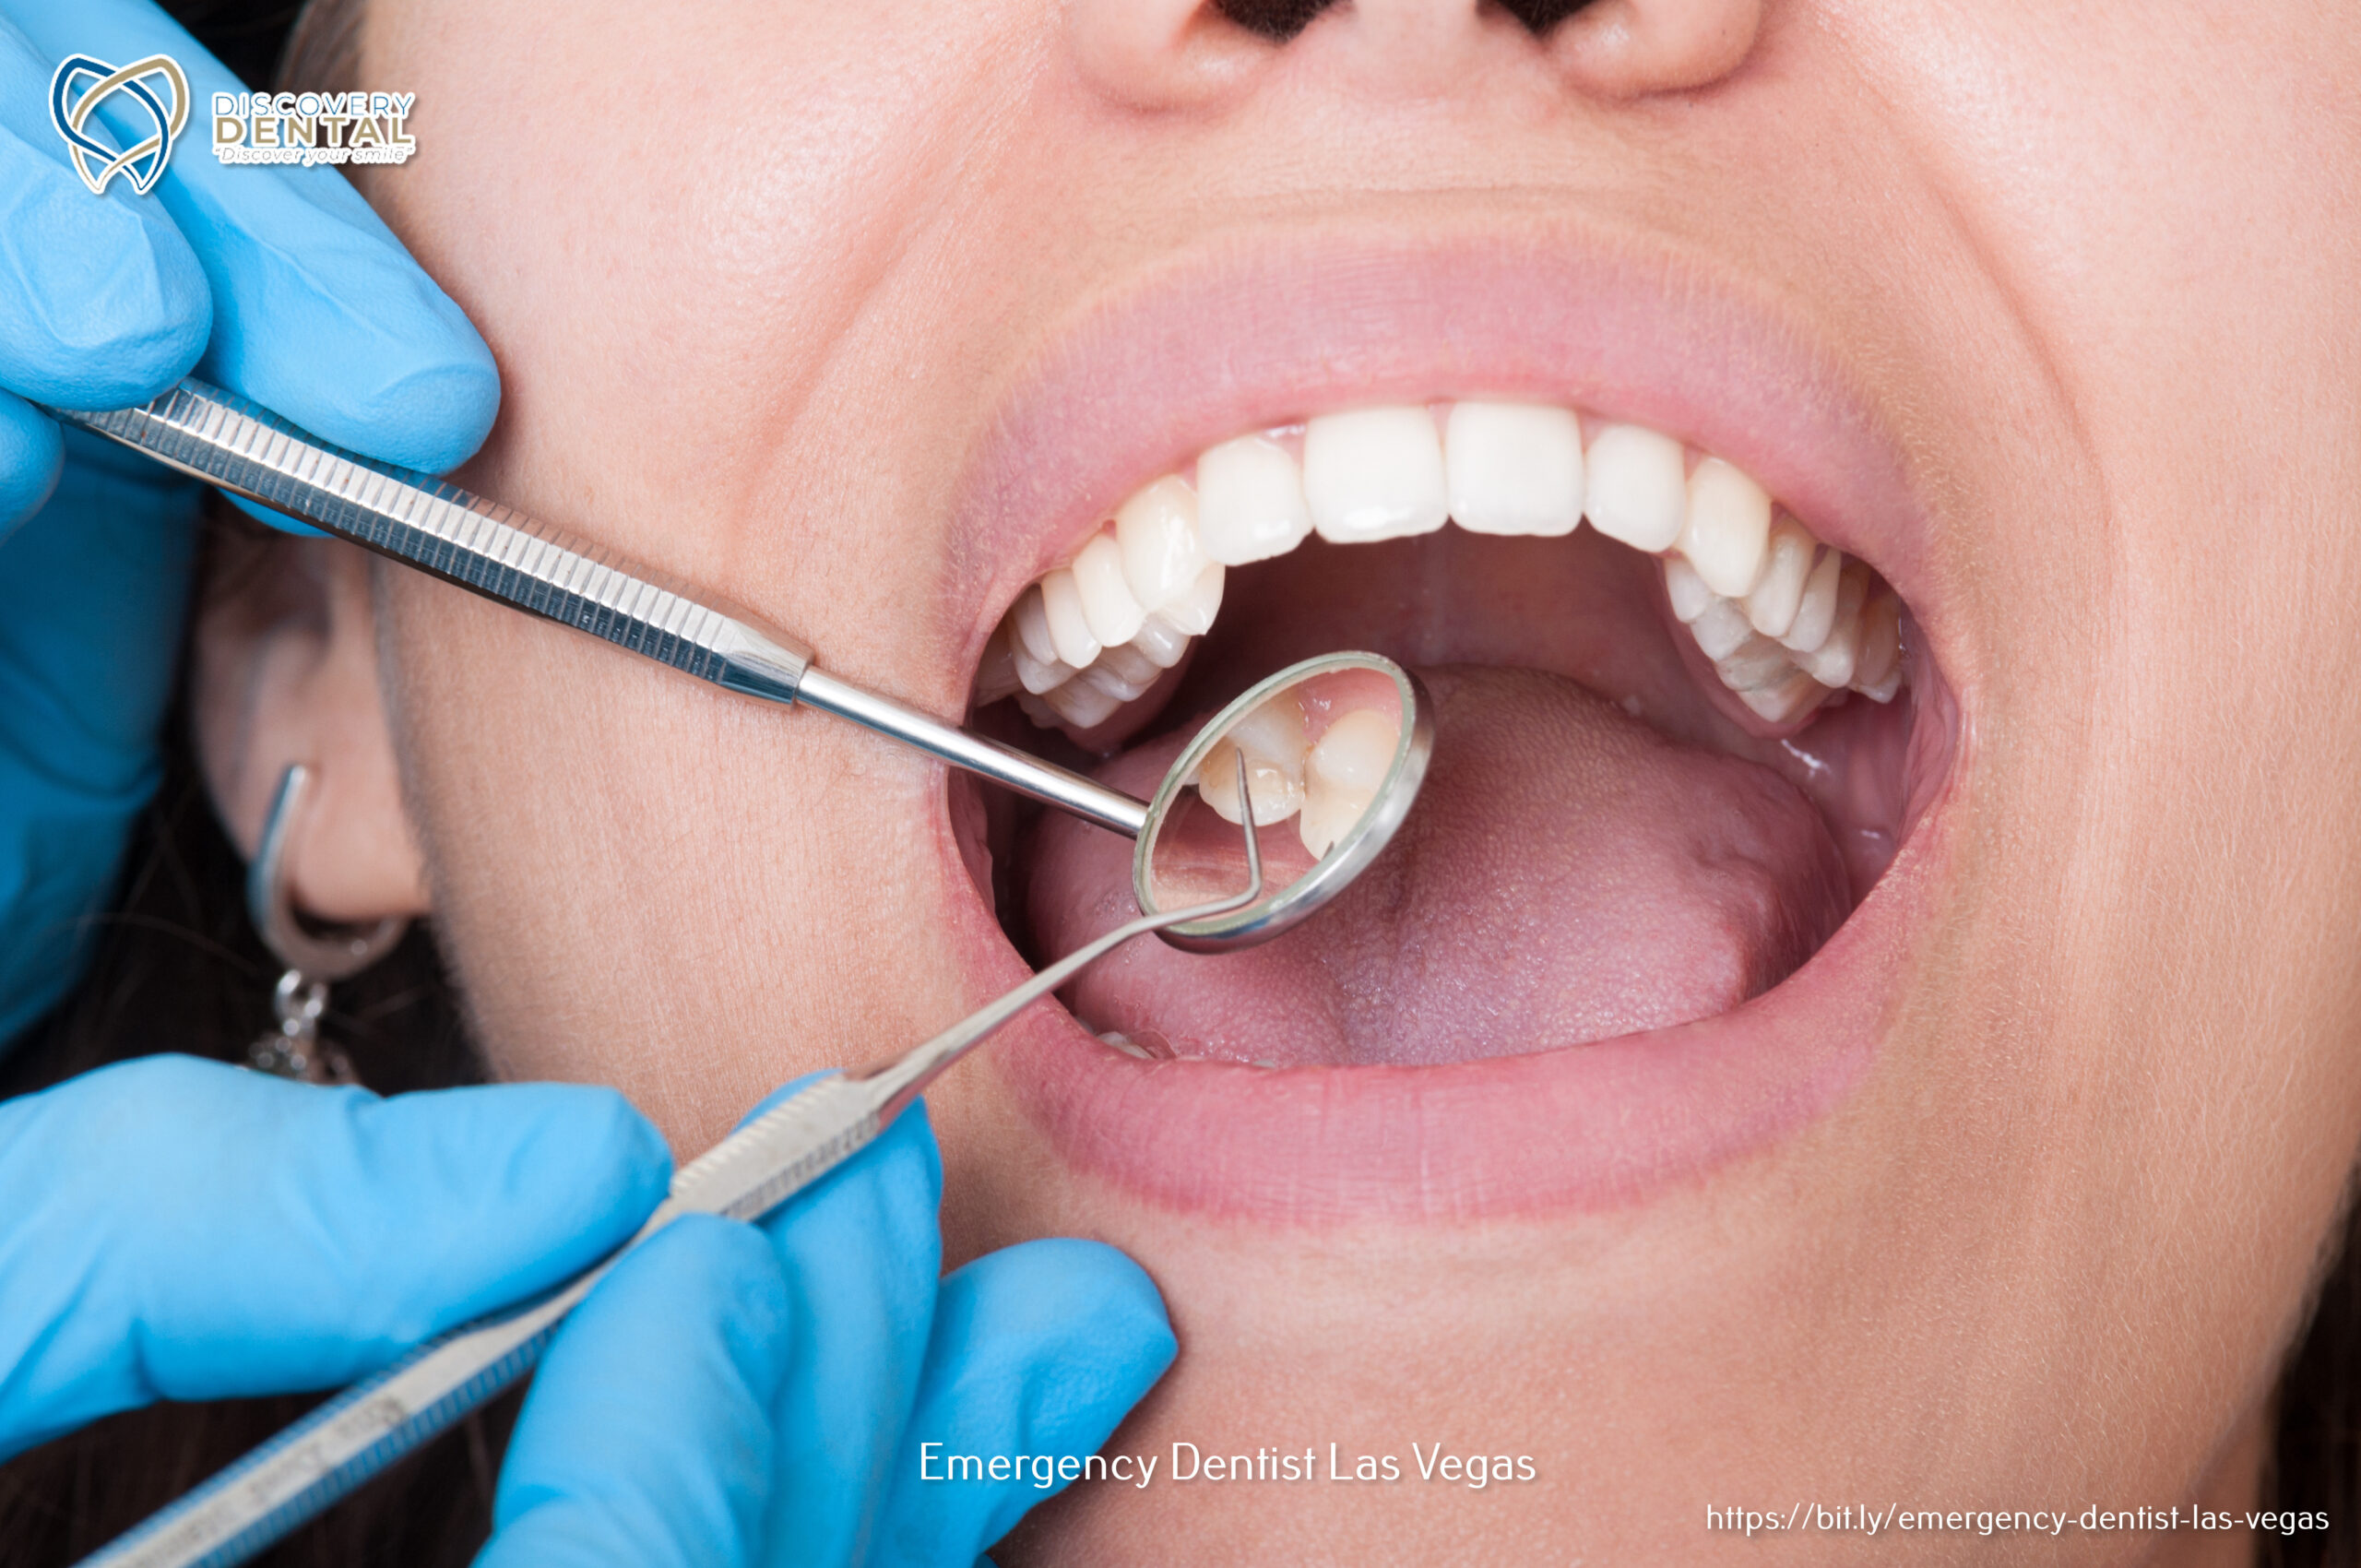 Las Vegas Dental Group  Dentists in Las Vegas - Top-Rated Dentist in Las  Vegas offering General and Cosmetic Dentistry, Dental Implants, Invisalign,  Emergency Dentist